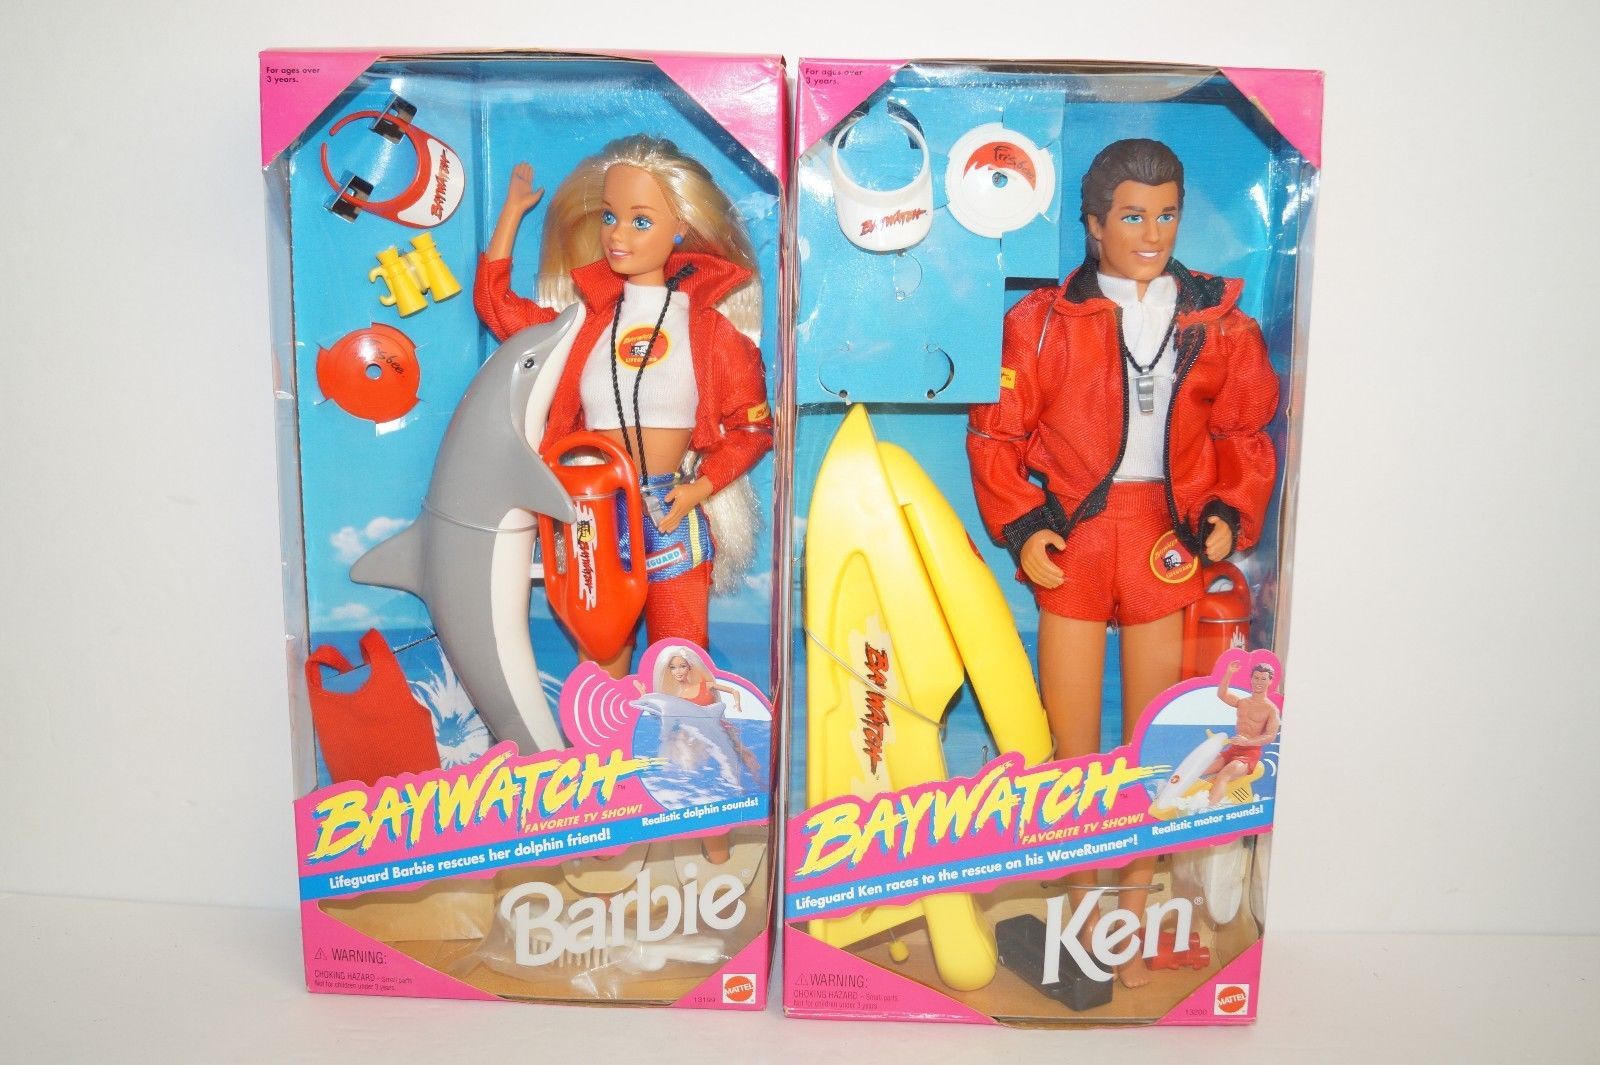 lifeguard ken